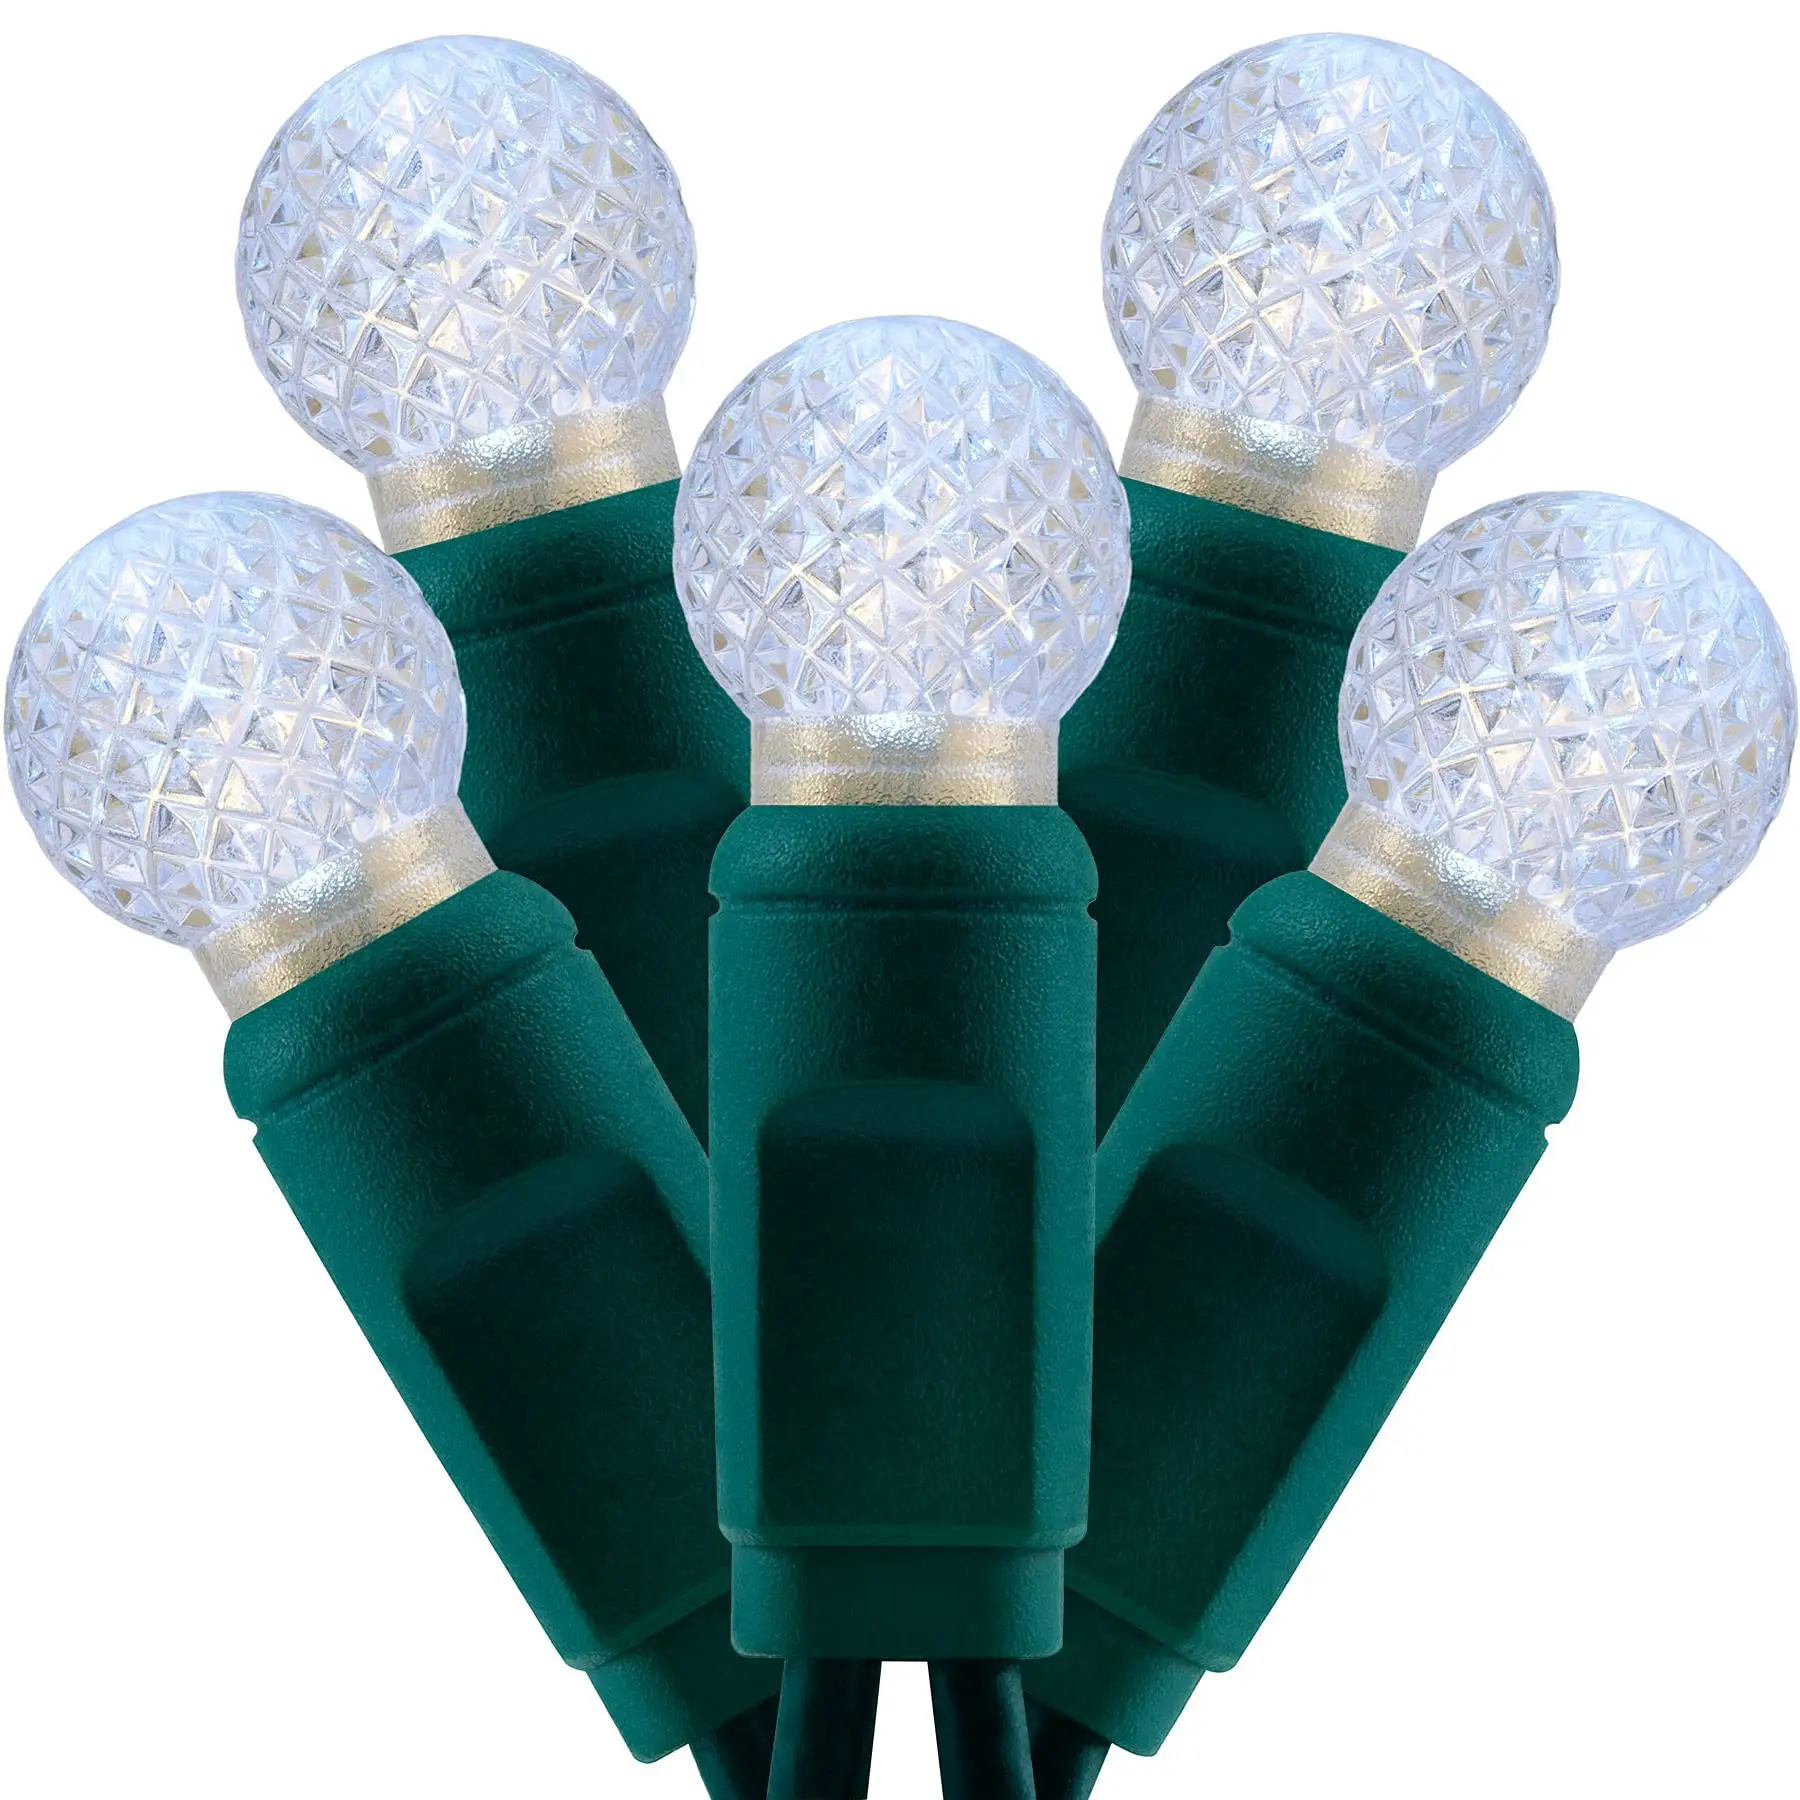 سلسلة أضواء لعيد الميلاد LED بيضاء متعددة الألوان مضادة للماء لخارج المنزل 120 فولت G12 Berry لشجرة صغيرة للبيع بالجملة